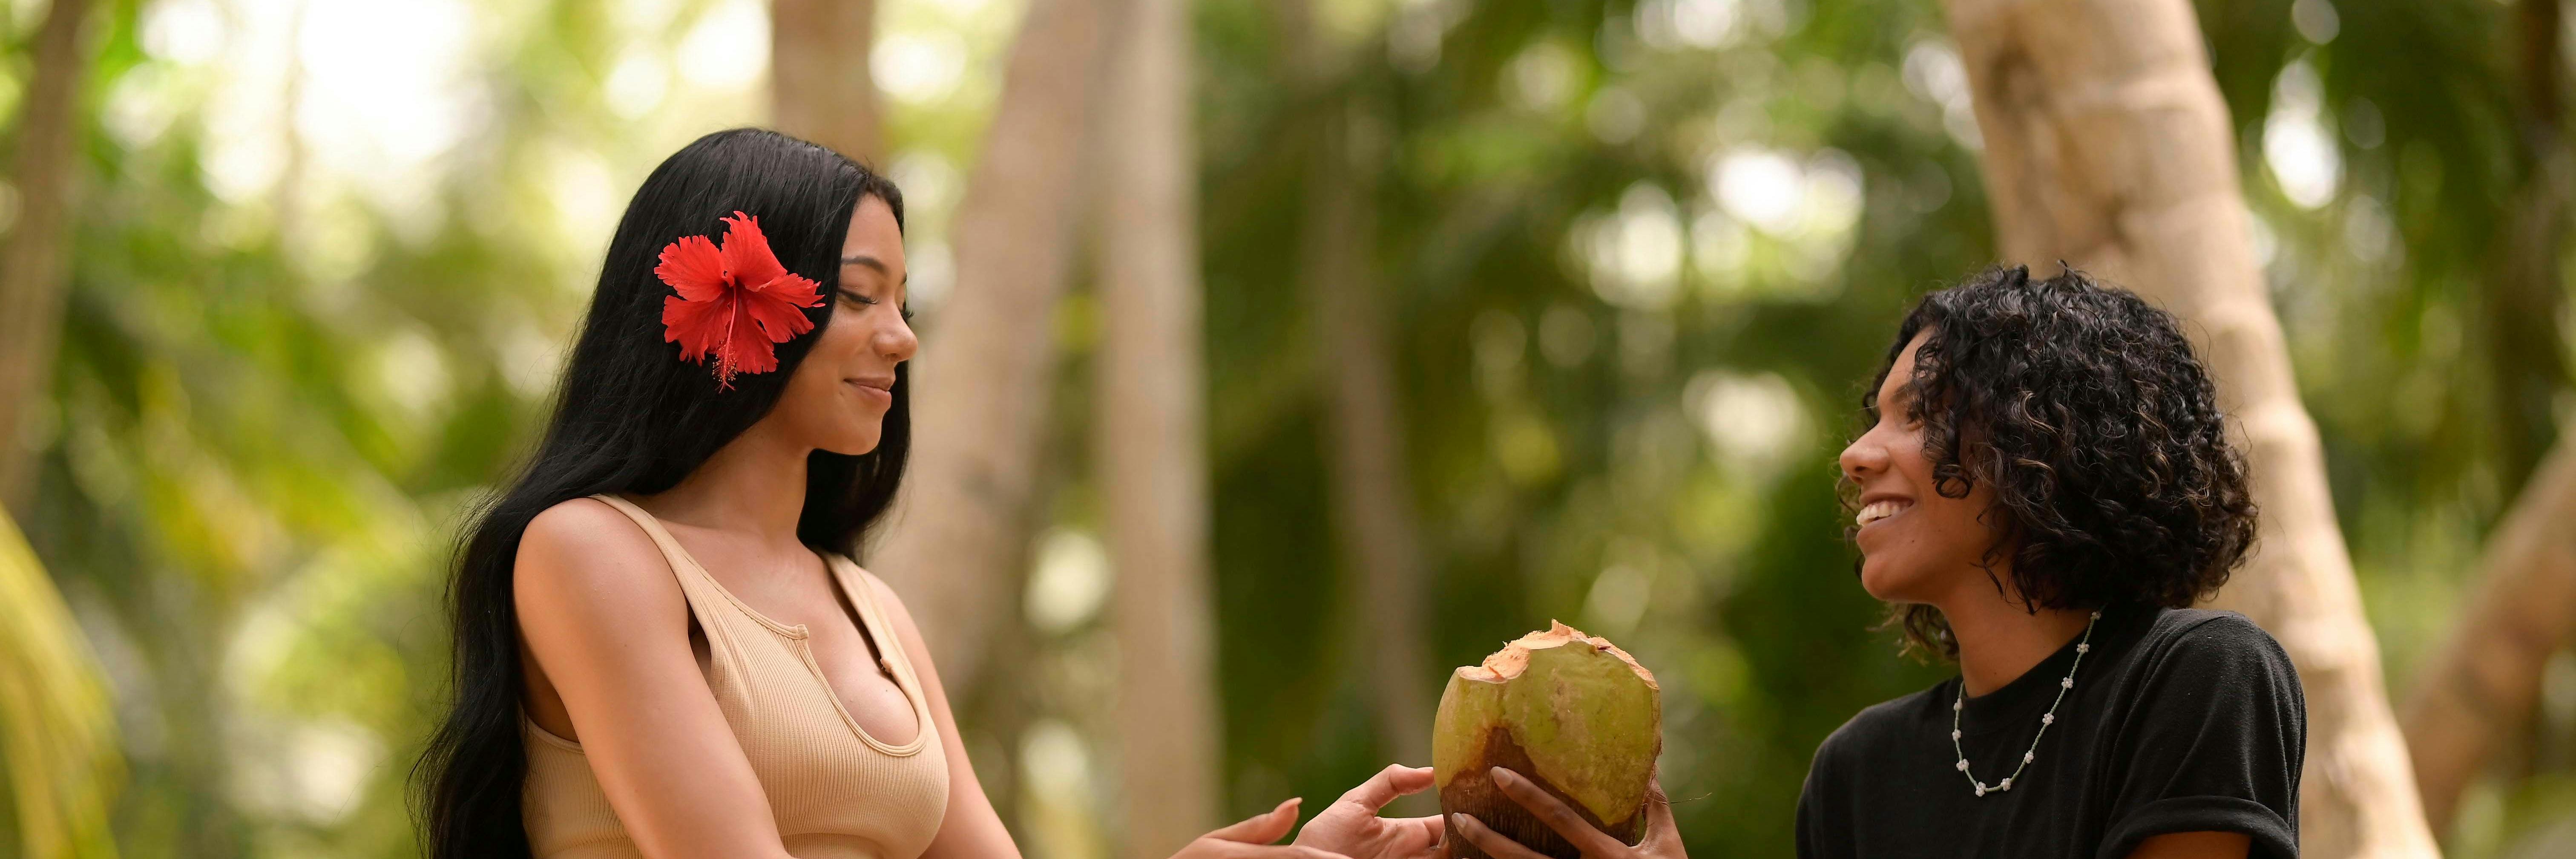 Al Son del Caribe Ep. 2 - La Chica del Cocotal 